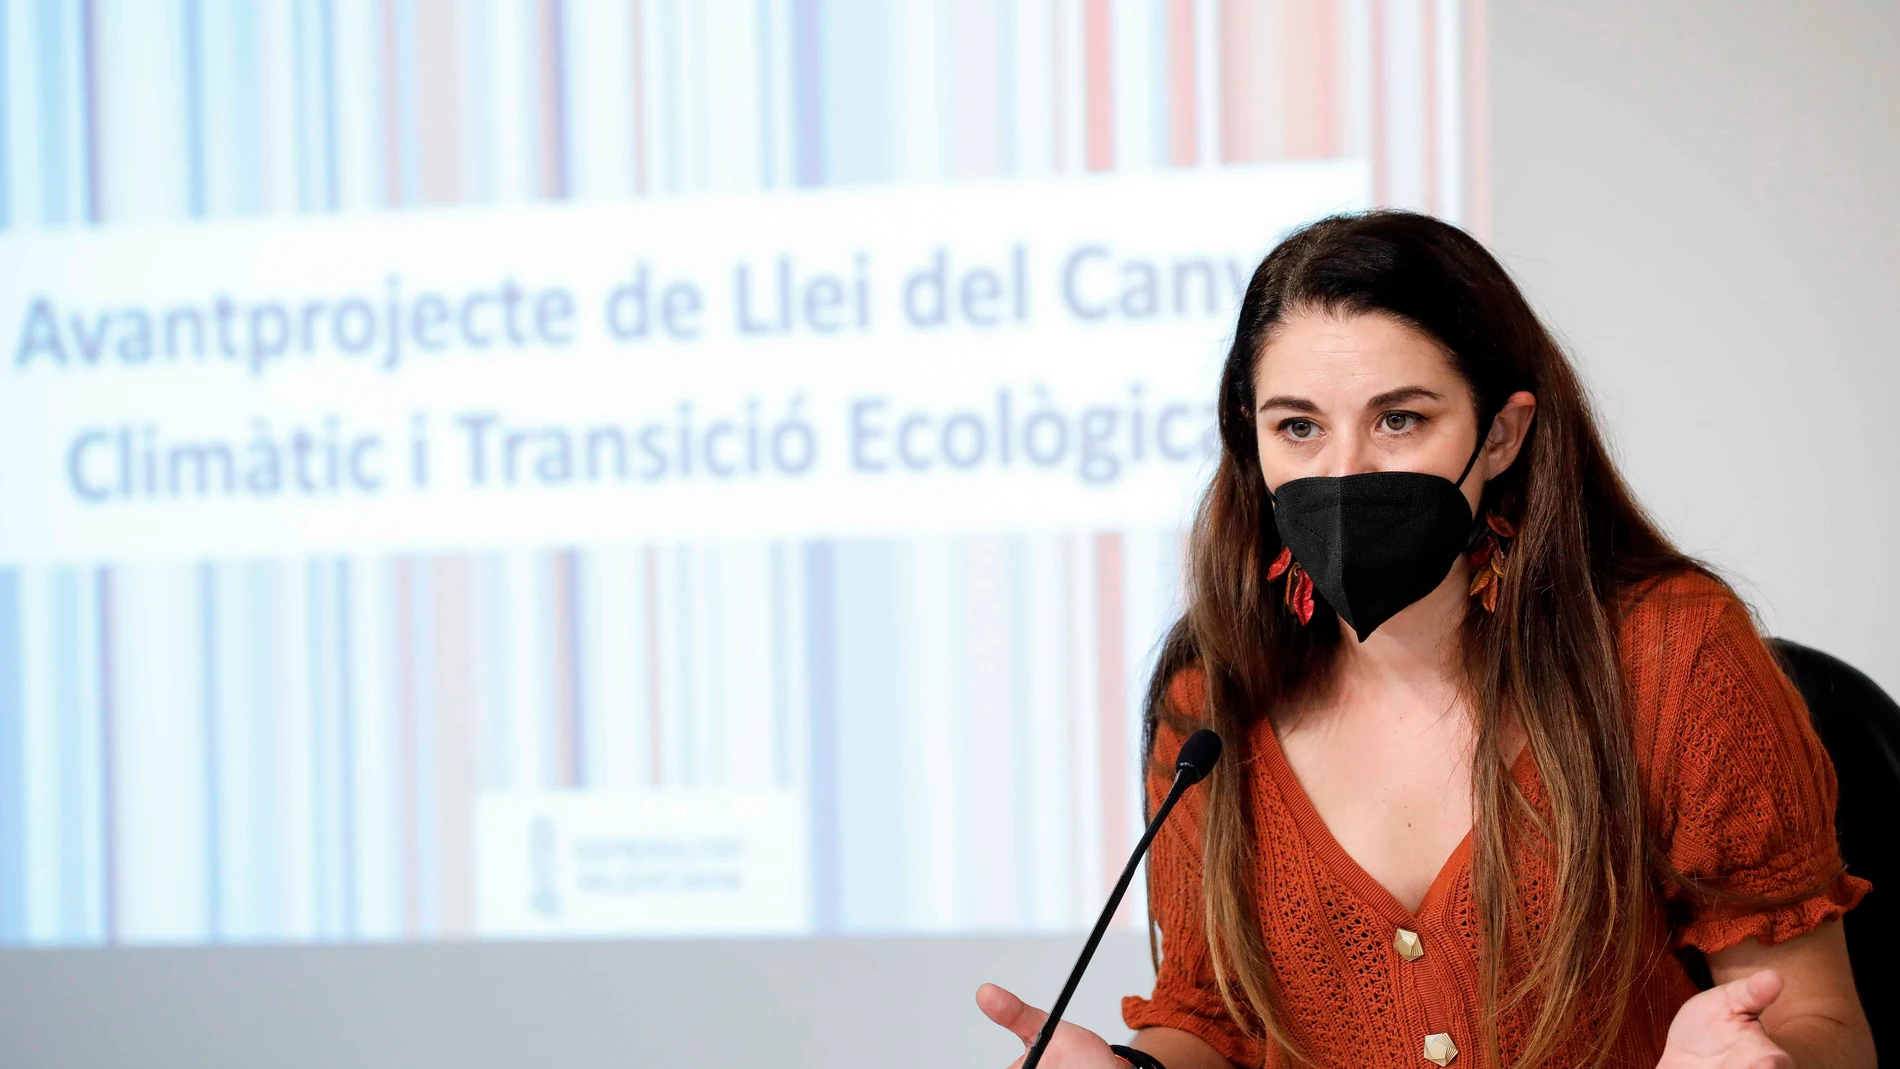 La consellera de Agricultura, Desarrollo Rural, Emergencia Climática y Transición Ecológica, Mireia Mollà, llevó a cabo el anteproyecto de Ley del Cambio Climático y Transición Ecológica que ahora da lugar a este nuevo plan.